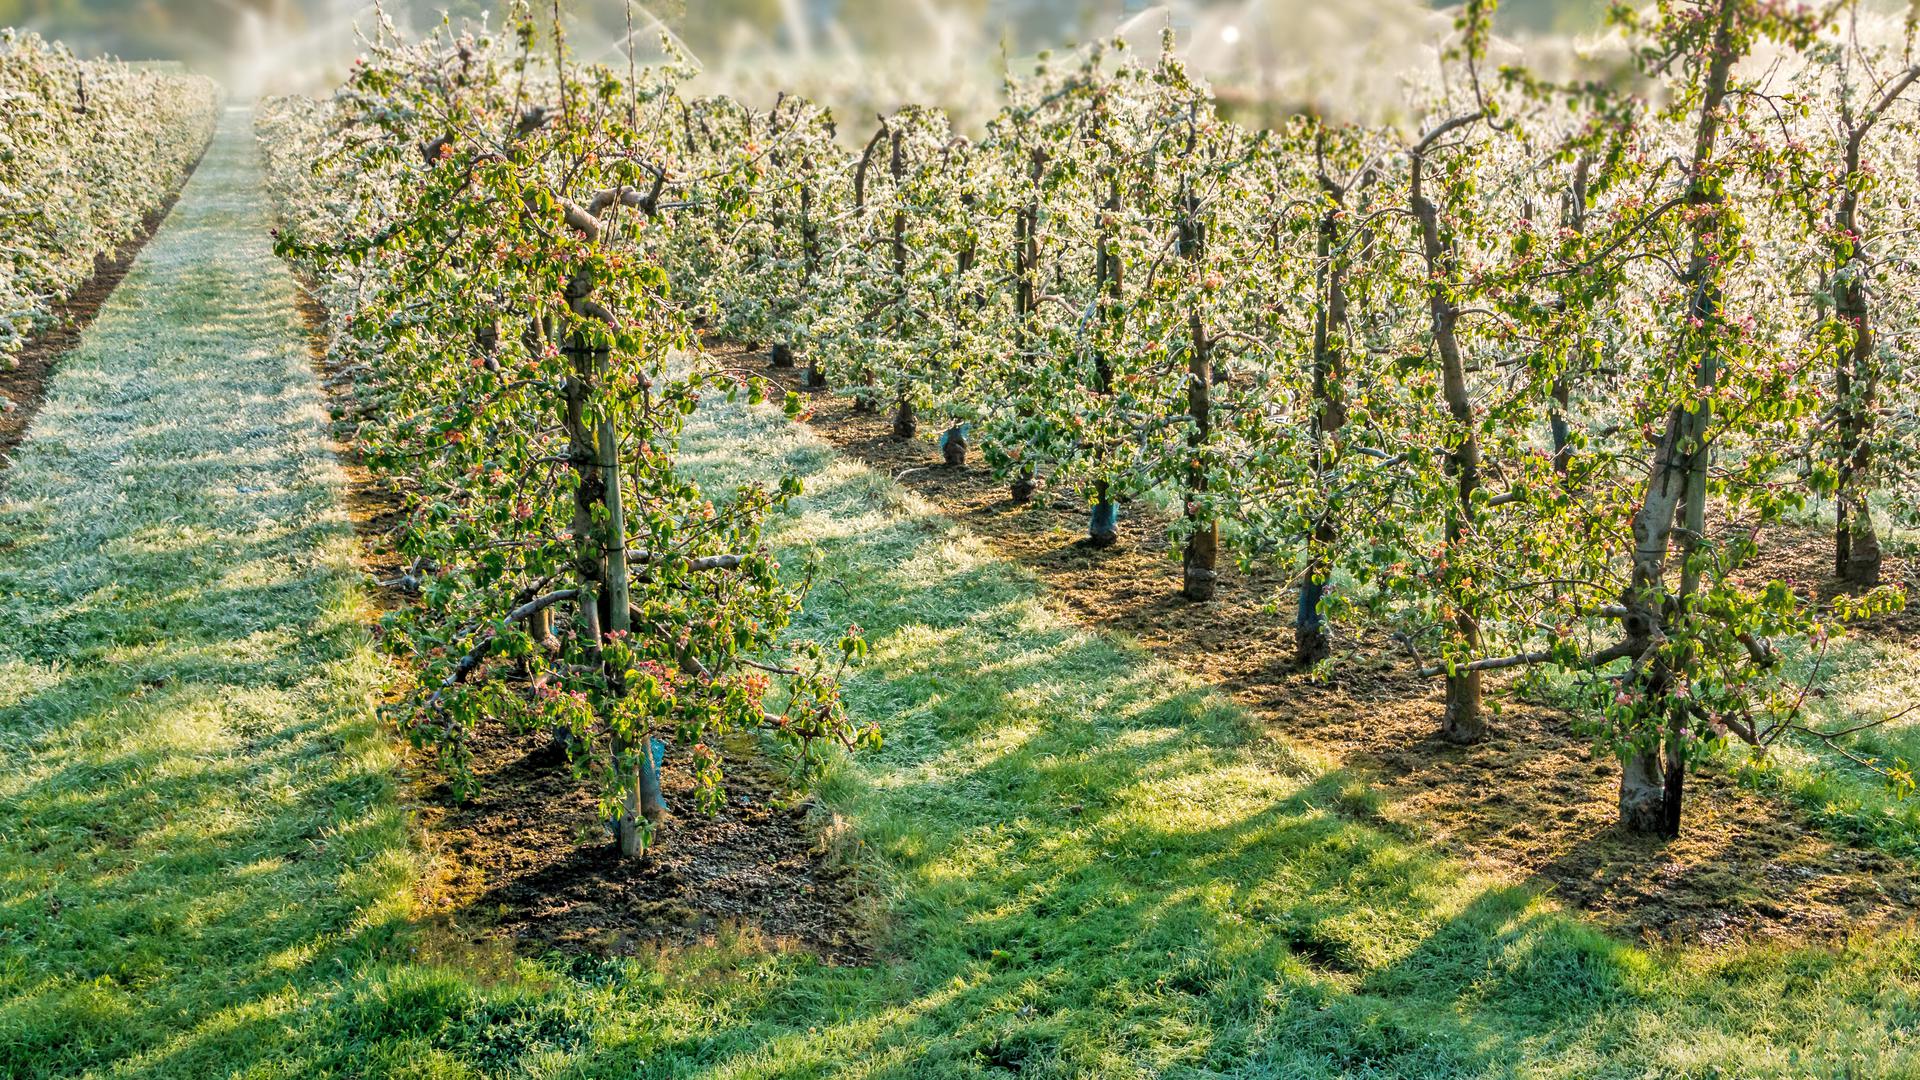 Um Frostschäden vorzubeugen, werden gerade Apfelbäume vor kalten Nächten beregnet. Die Blüten werden so in eine schützende Eisschicht gehüllt. Foto: Basler